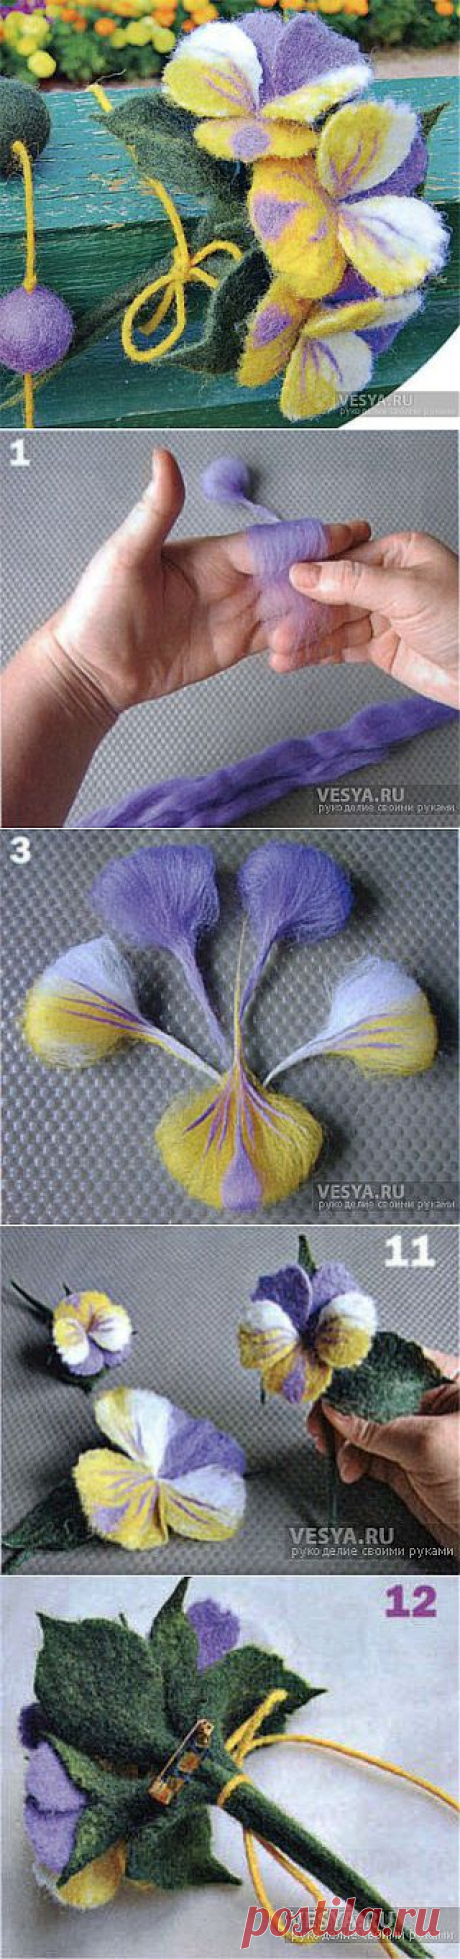 Цветы анютины глазки в технике мокрого валяния из шерсти